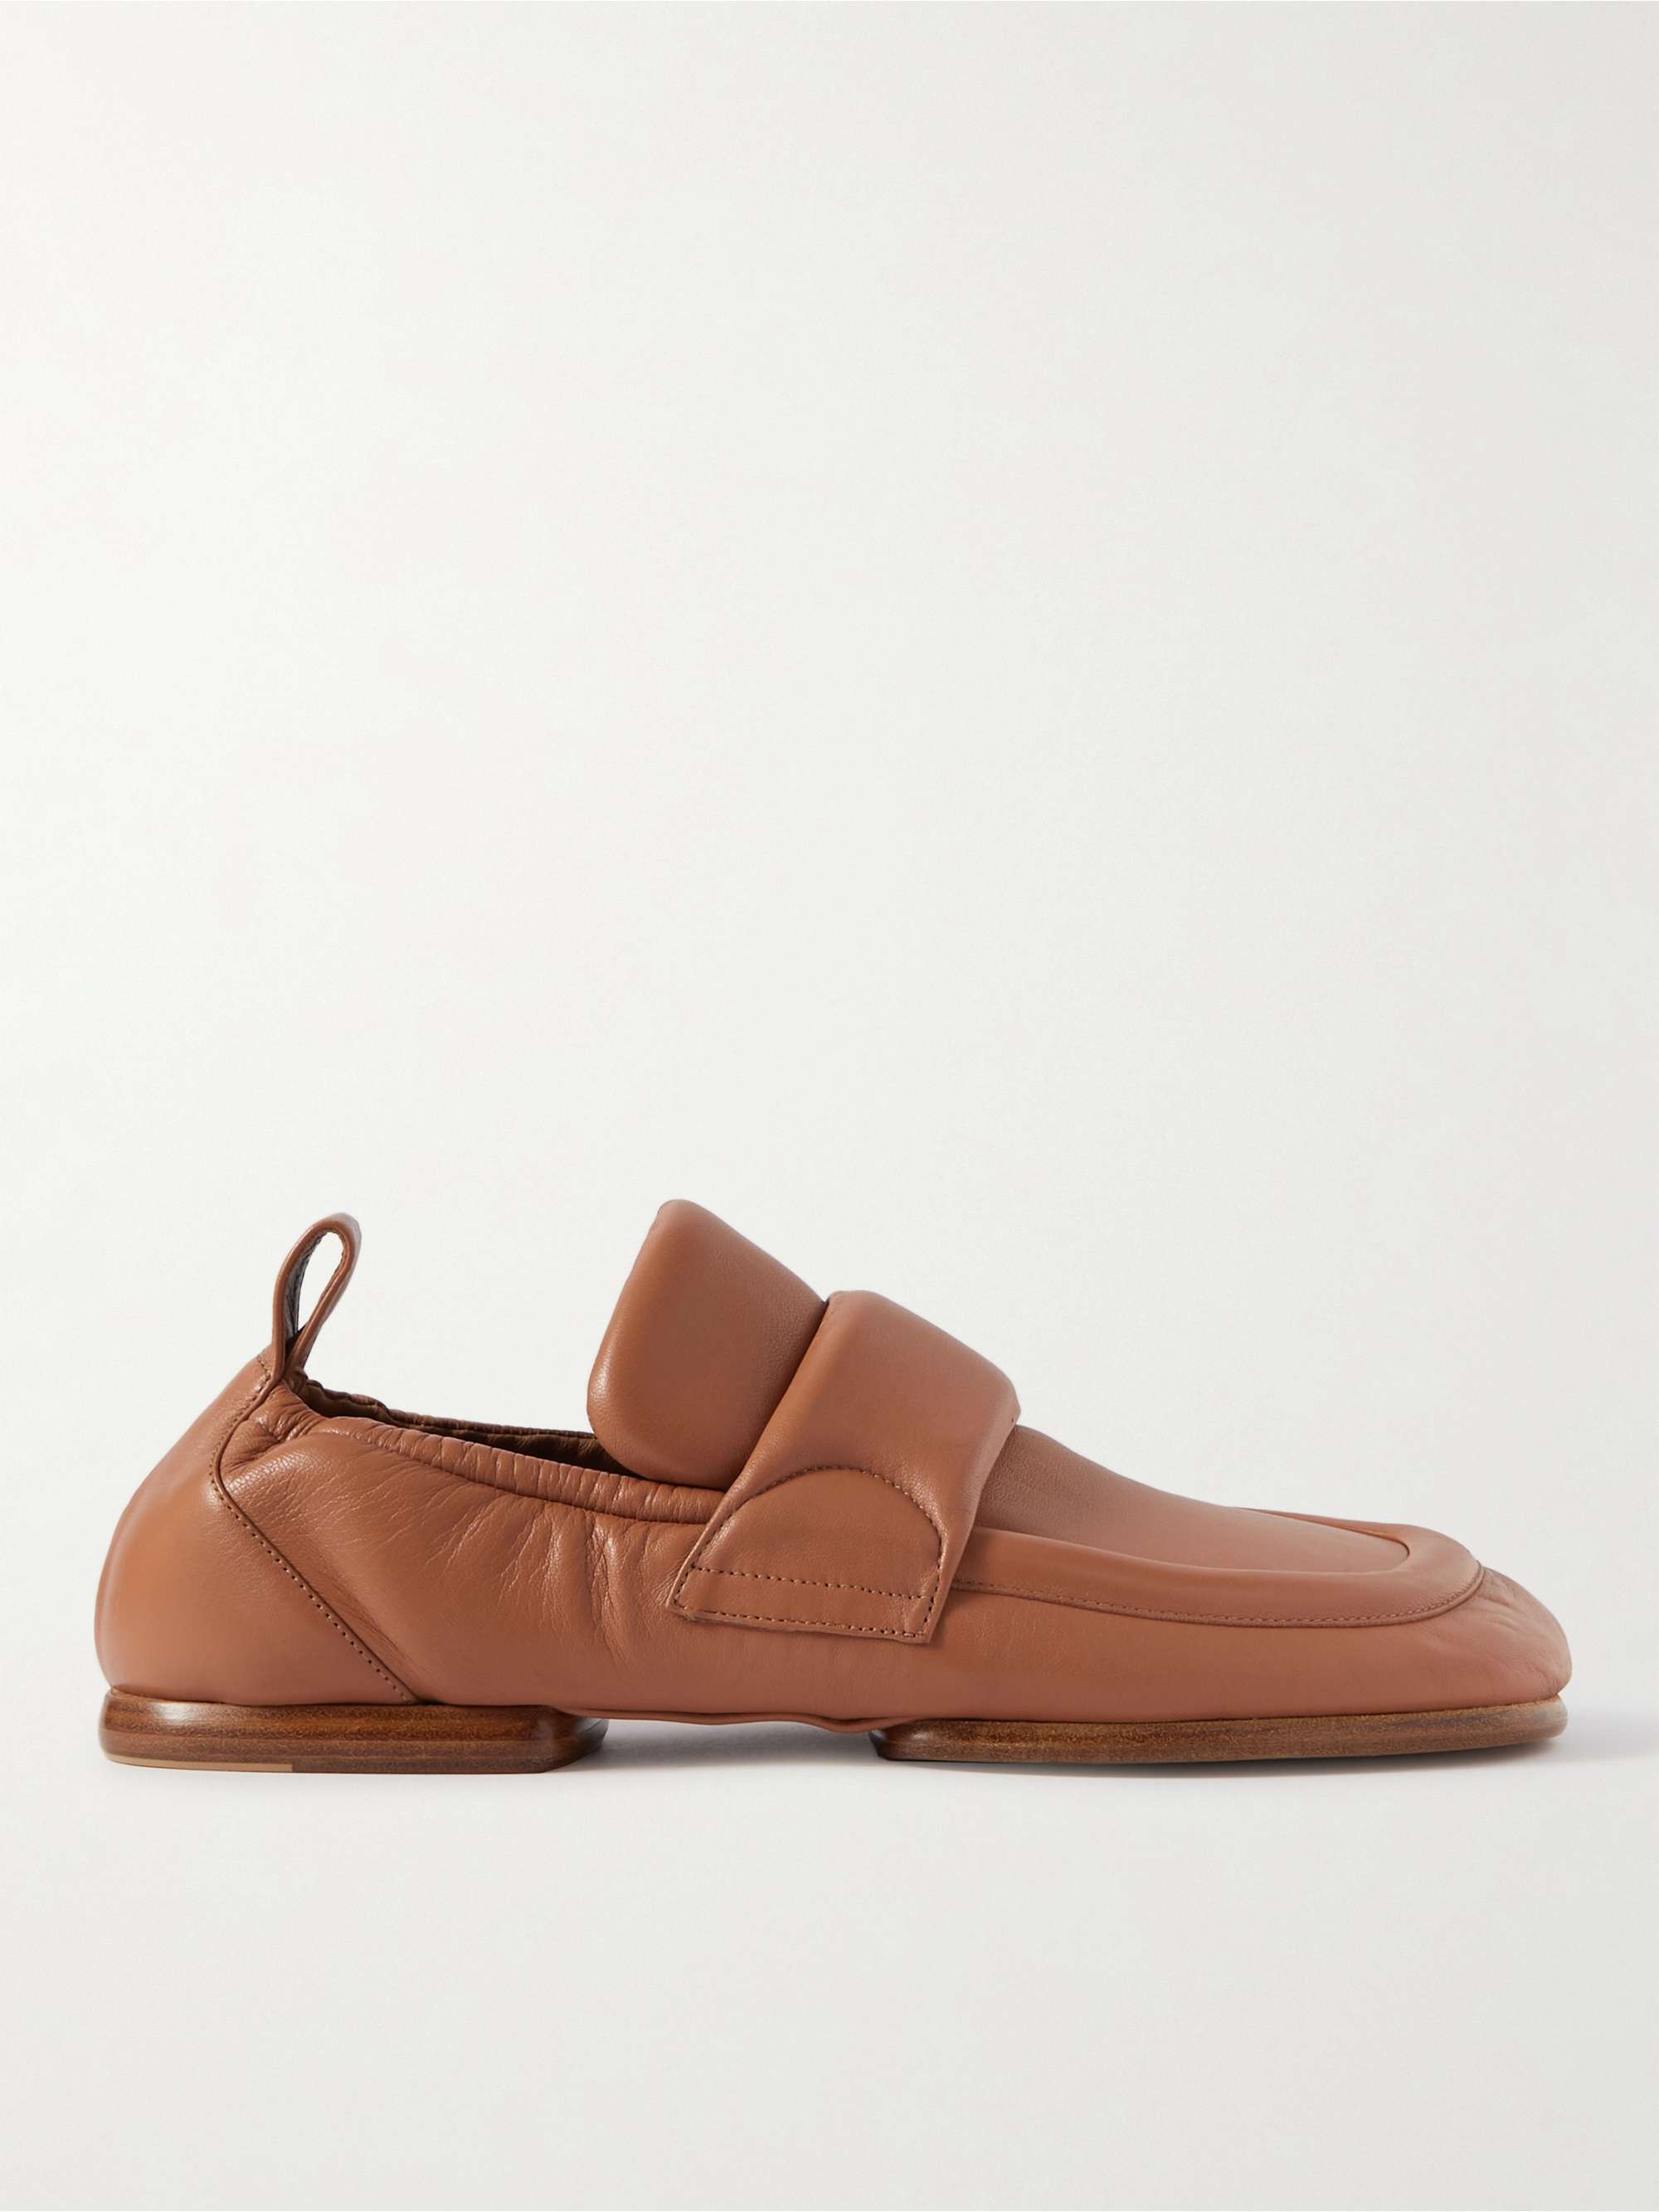 DRIES VAN NOTEN Leather Loafers | MR PORTER